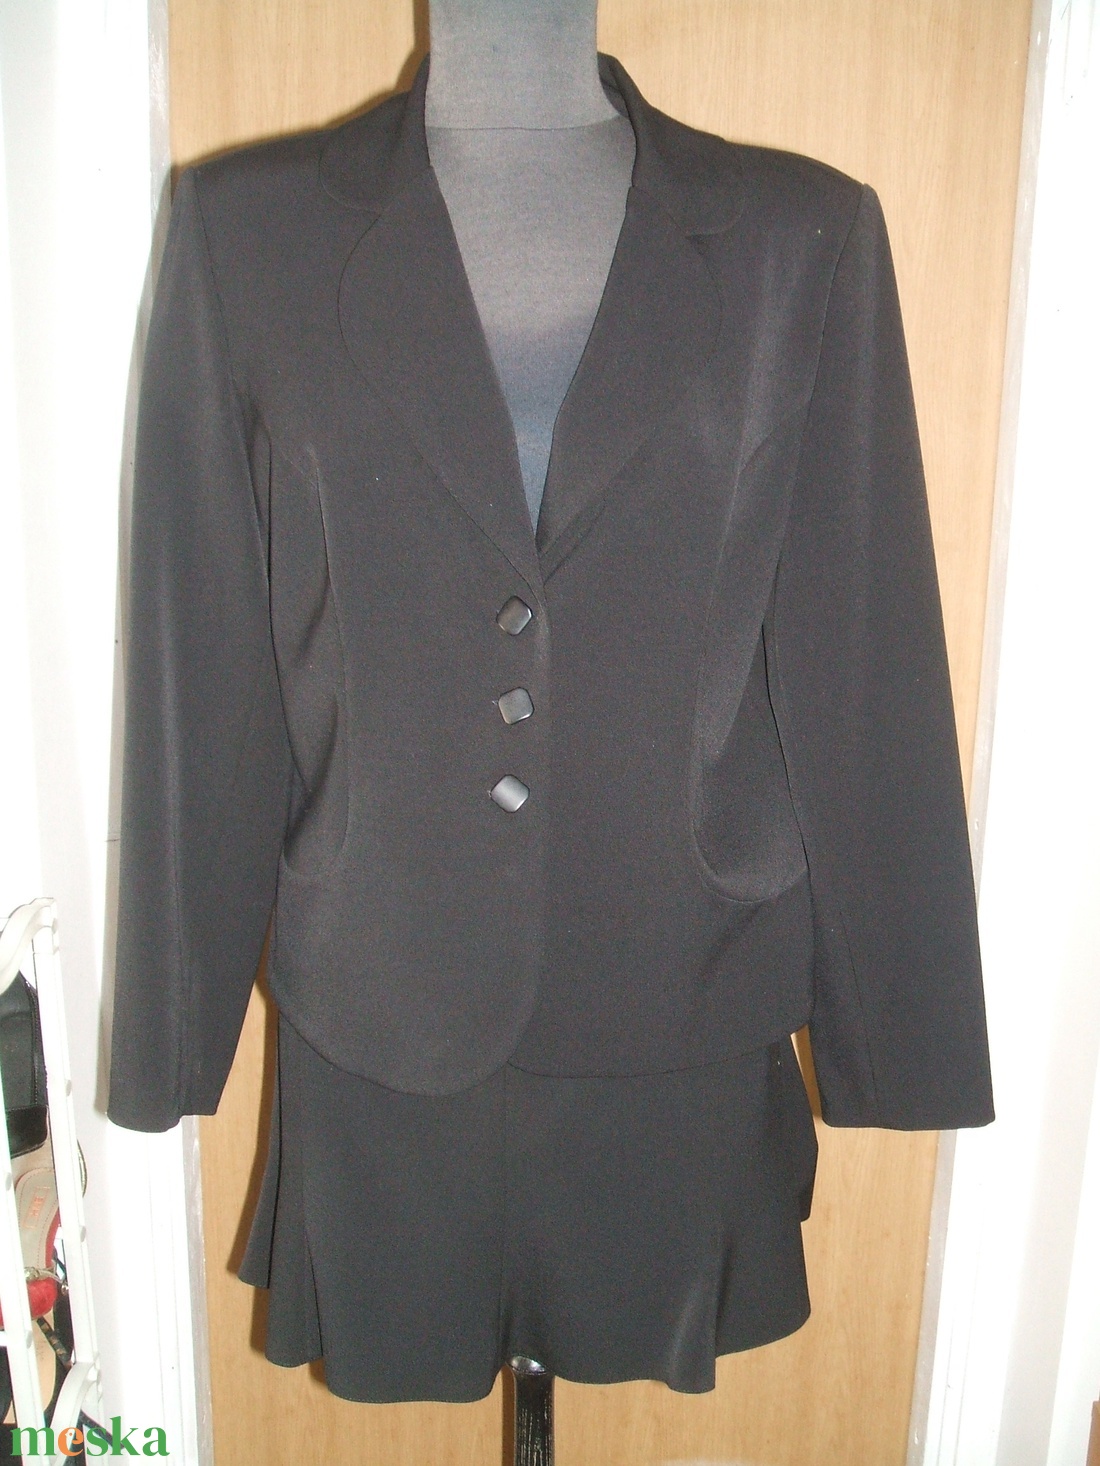 Női fekete szövet kosztüm szoknyával, 38-as - ruha & divat - női ruha - blézer & kosztüm - Meska.hu